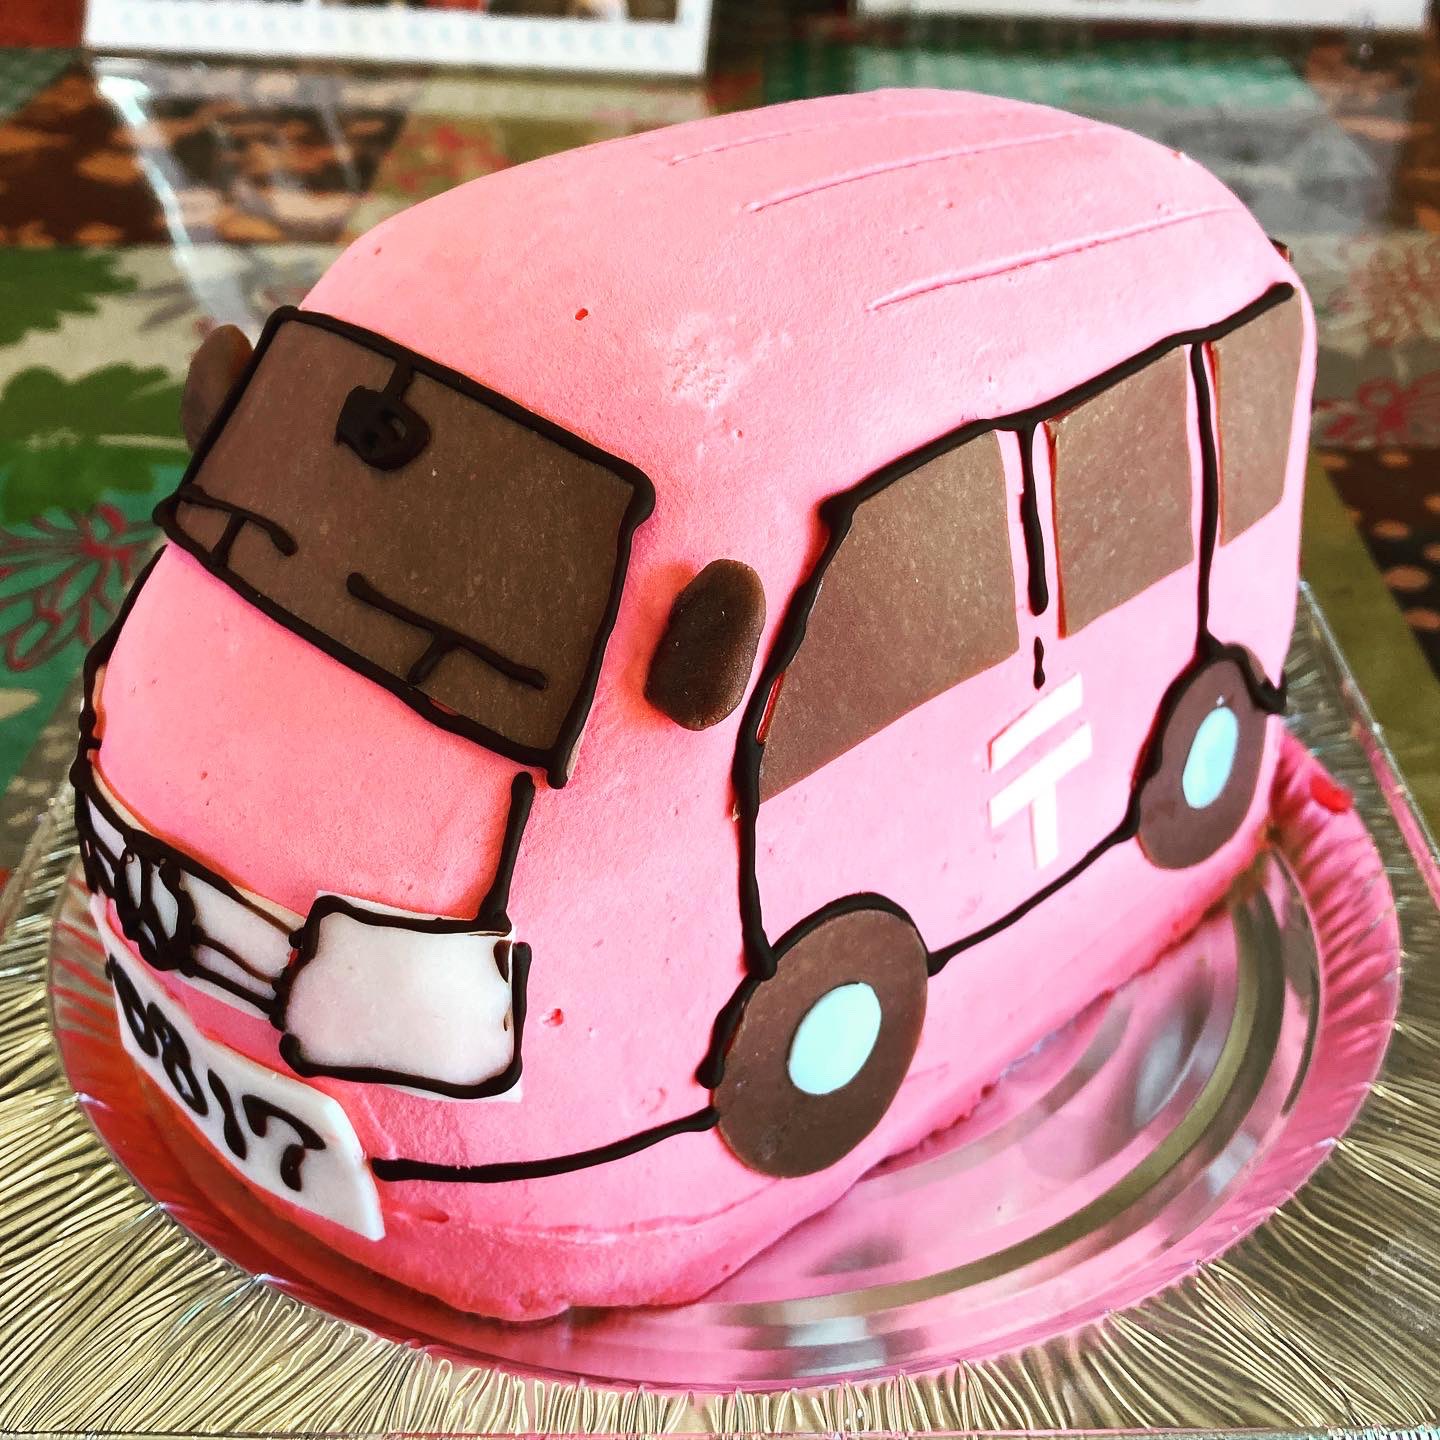 スイーツショップボストン در توییتر 郵便配達車のケーキです 郵便車 働く車 バースデーケーキ 3dケーキ